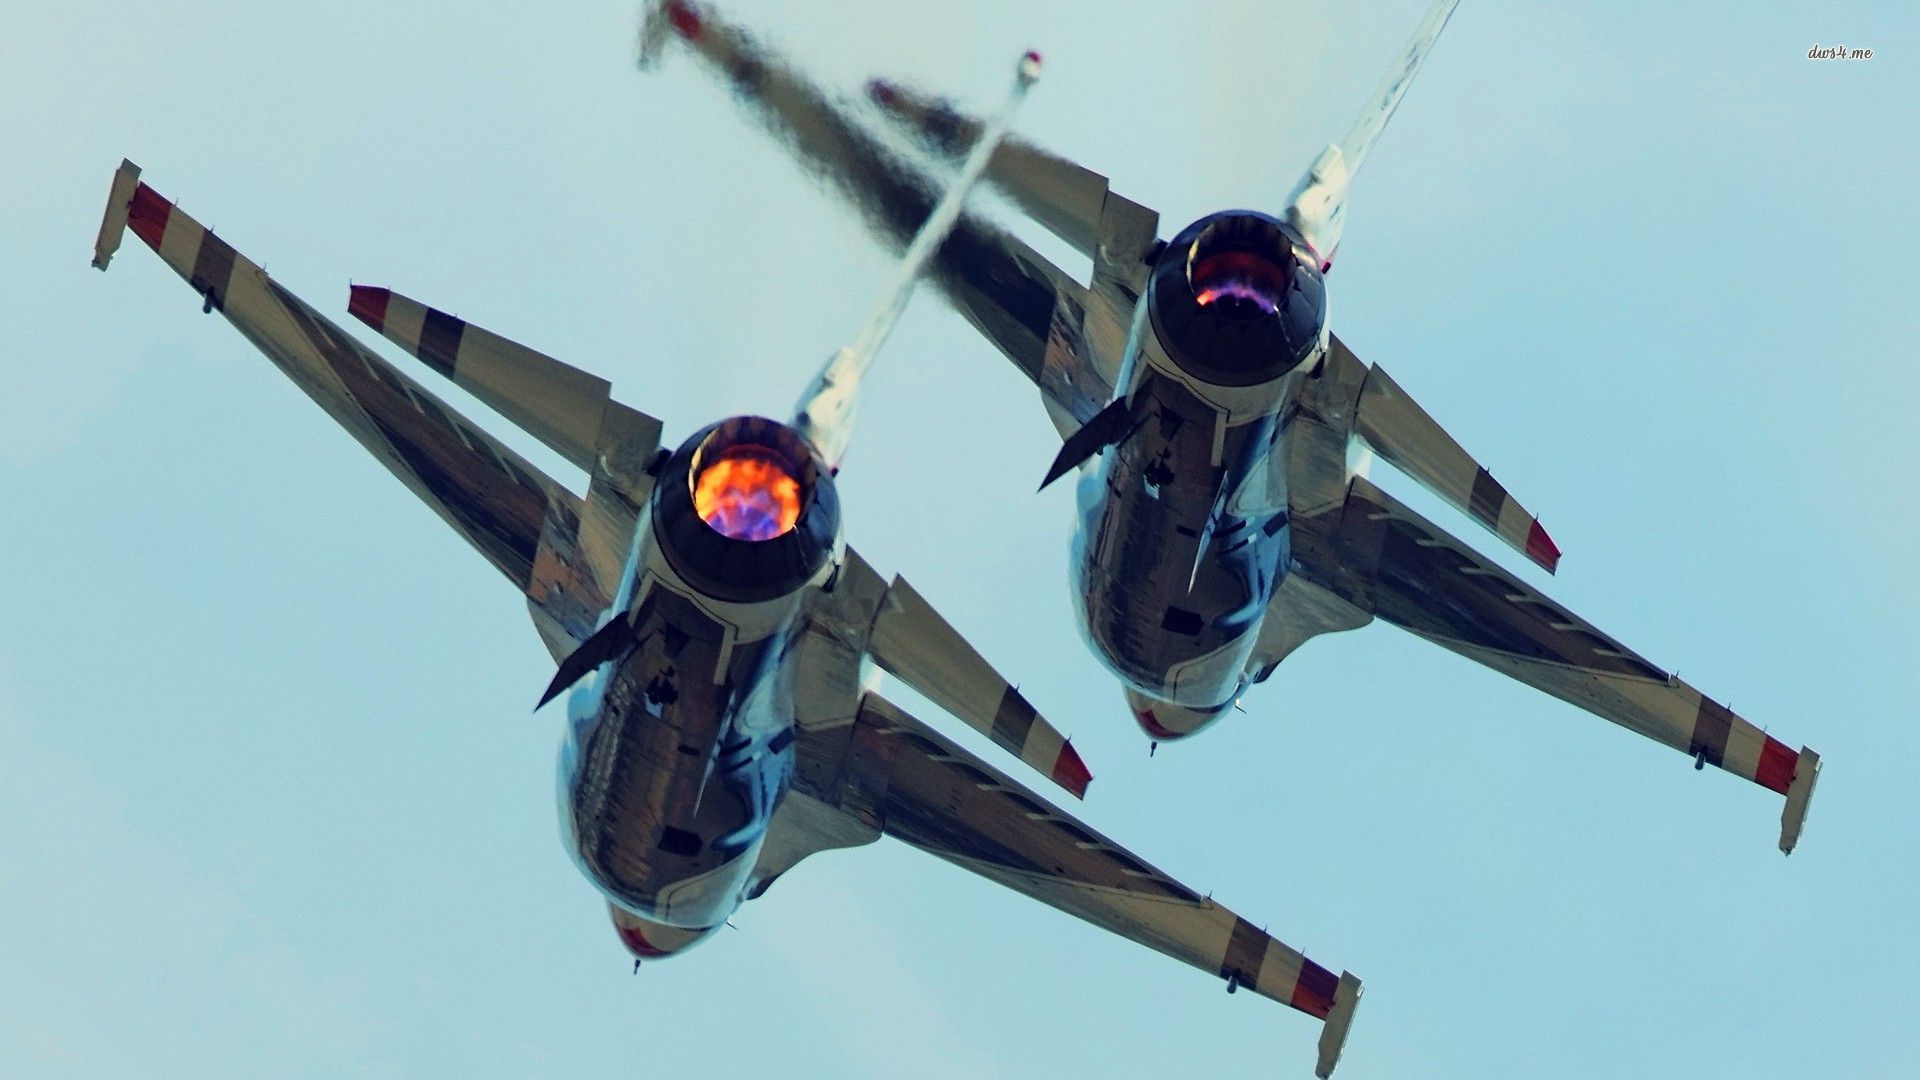 Descarga gratuita de fondo de pantalla para móvil de General Dynamics F 16 Fighting Falcon, Militar, Aviones De Combate, Avión.